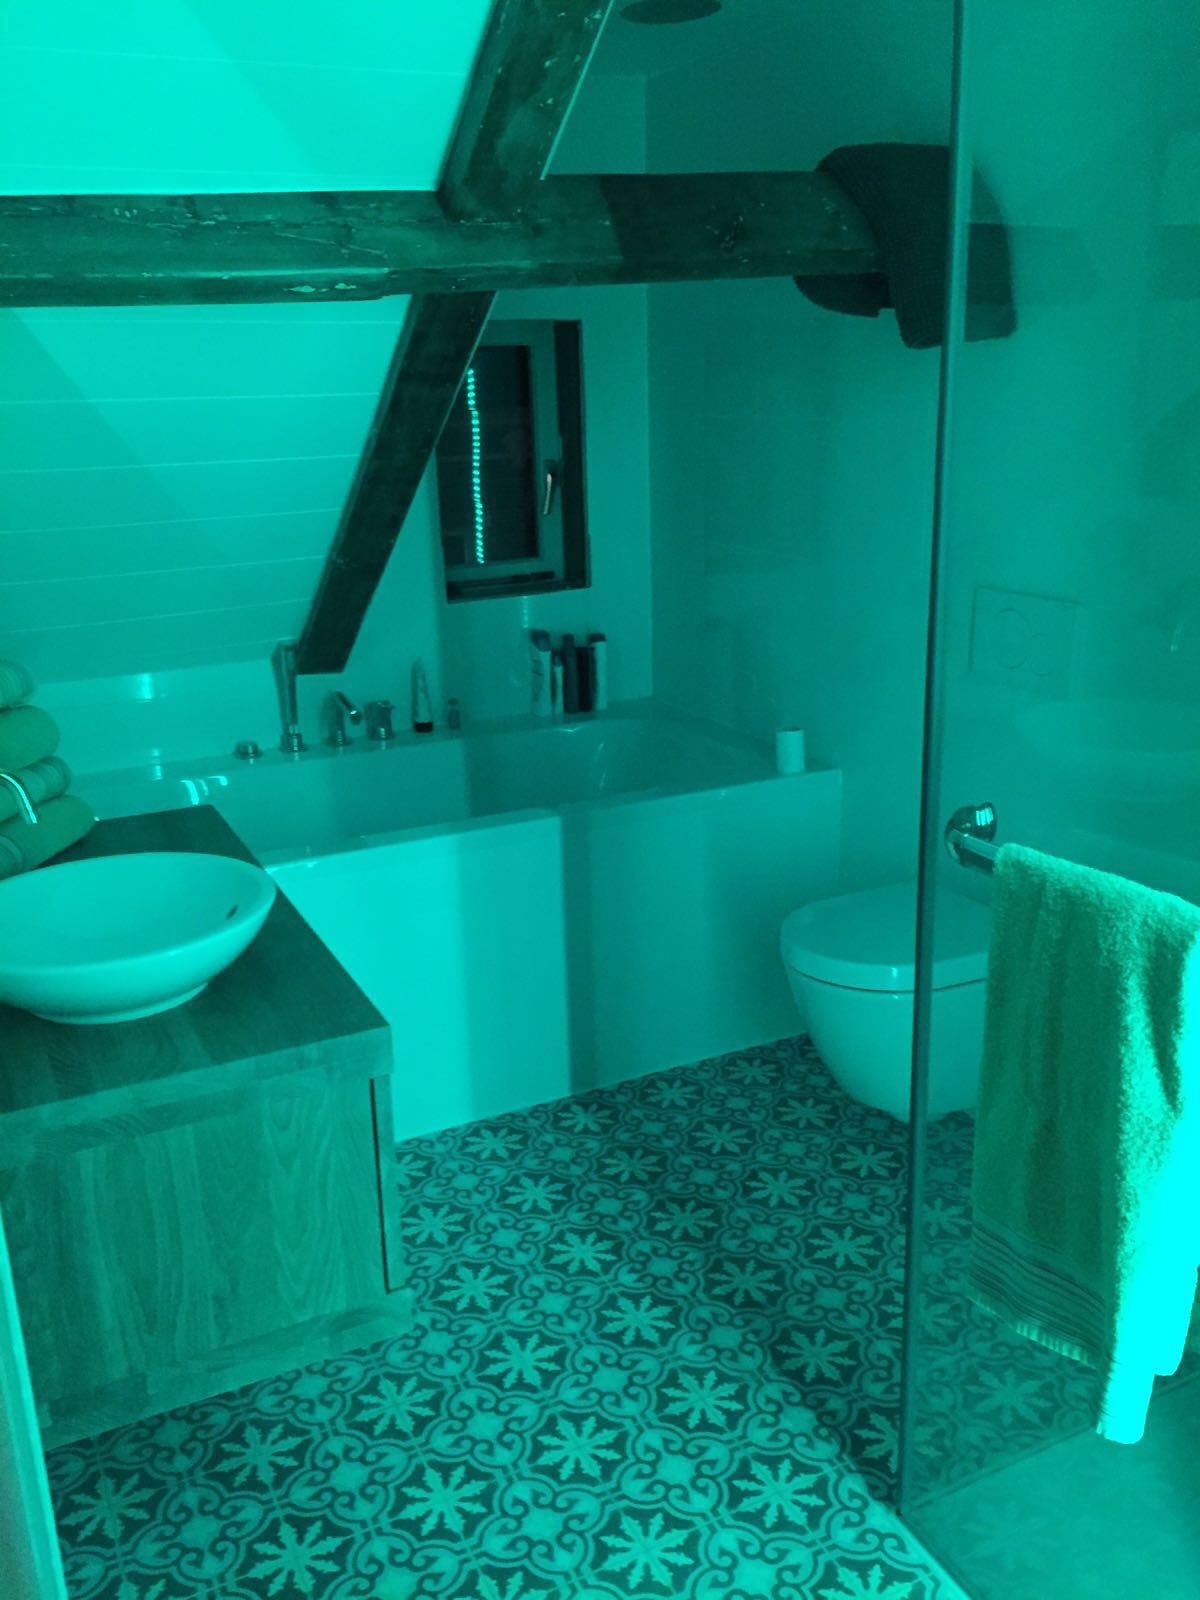 Led strip badkamer groen